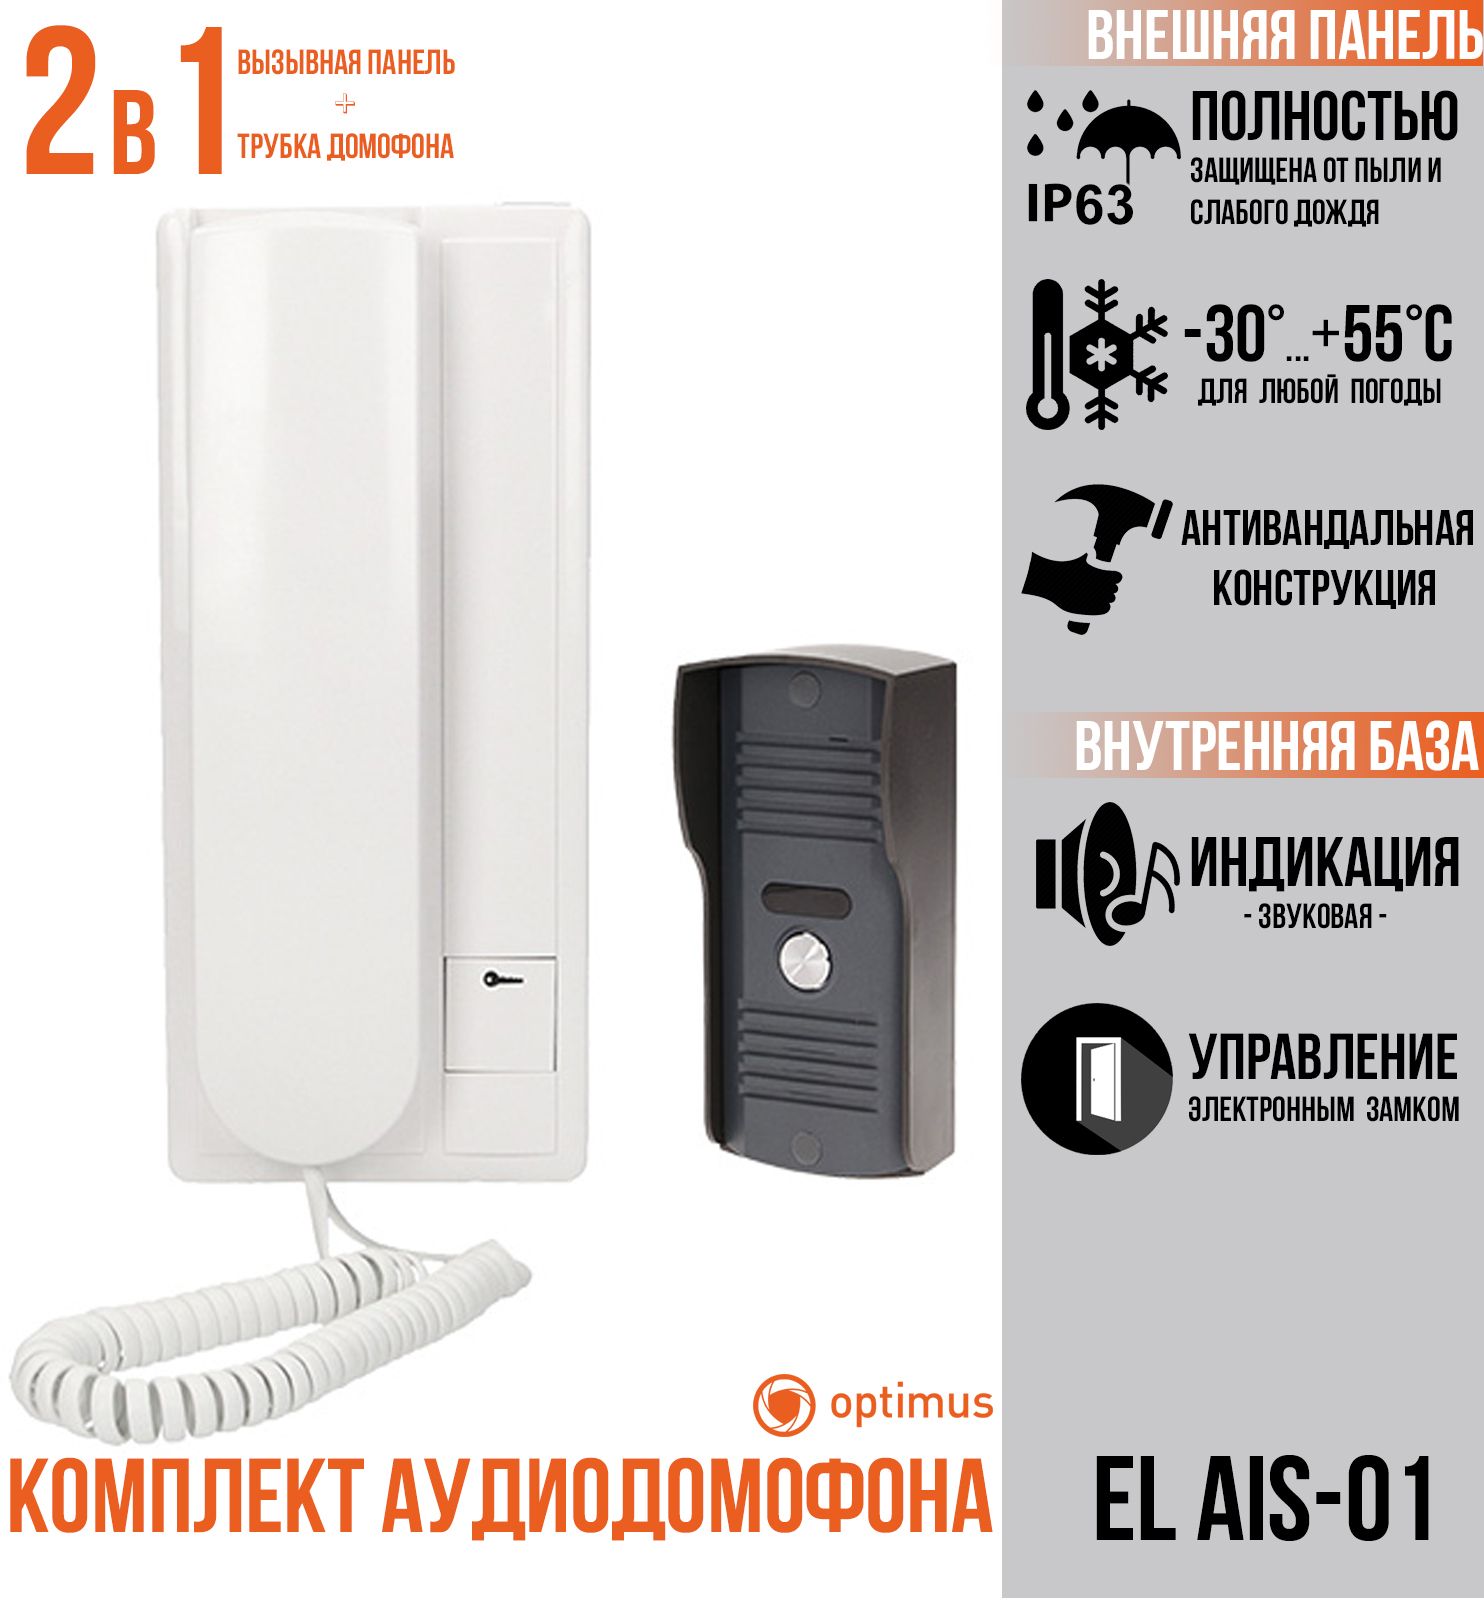 Комплект Optimus EL AIS-01 комплект аудиодомофона ts 203kit с электромеханическим замком ts el2369classic